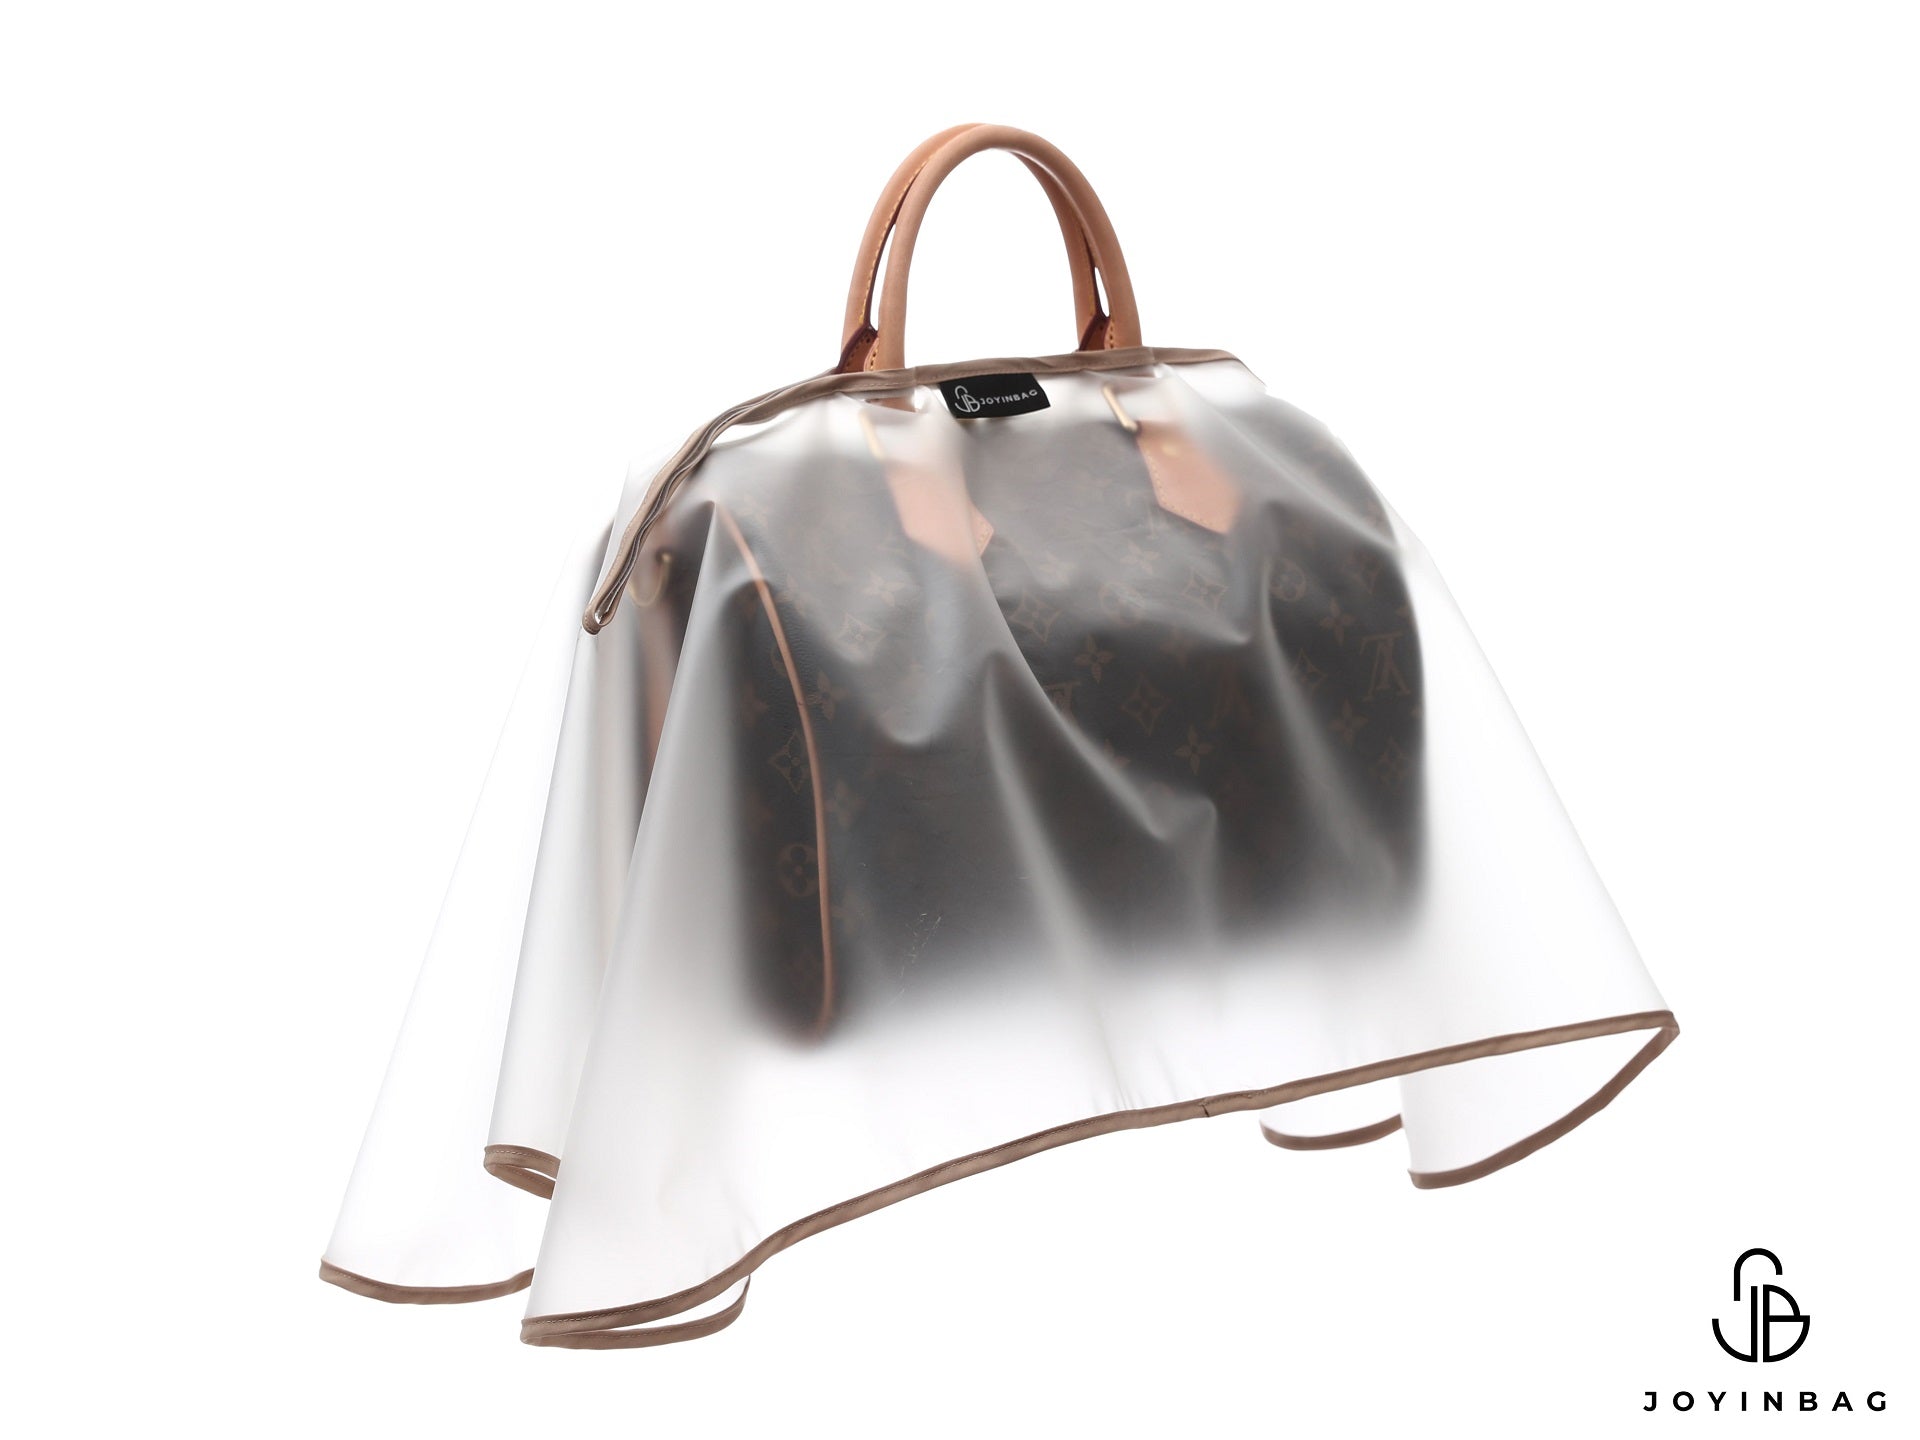 Designer Handbag Rain Protector, Handbag Rain Slicker